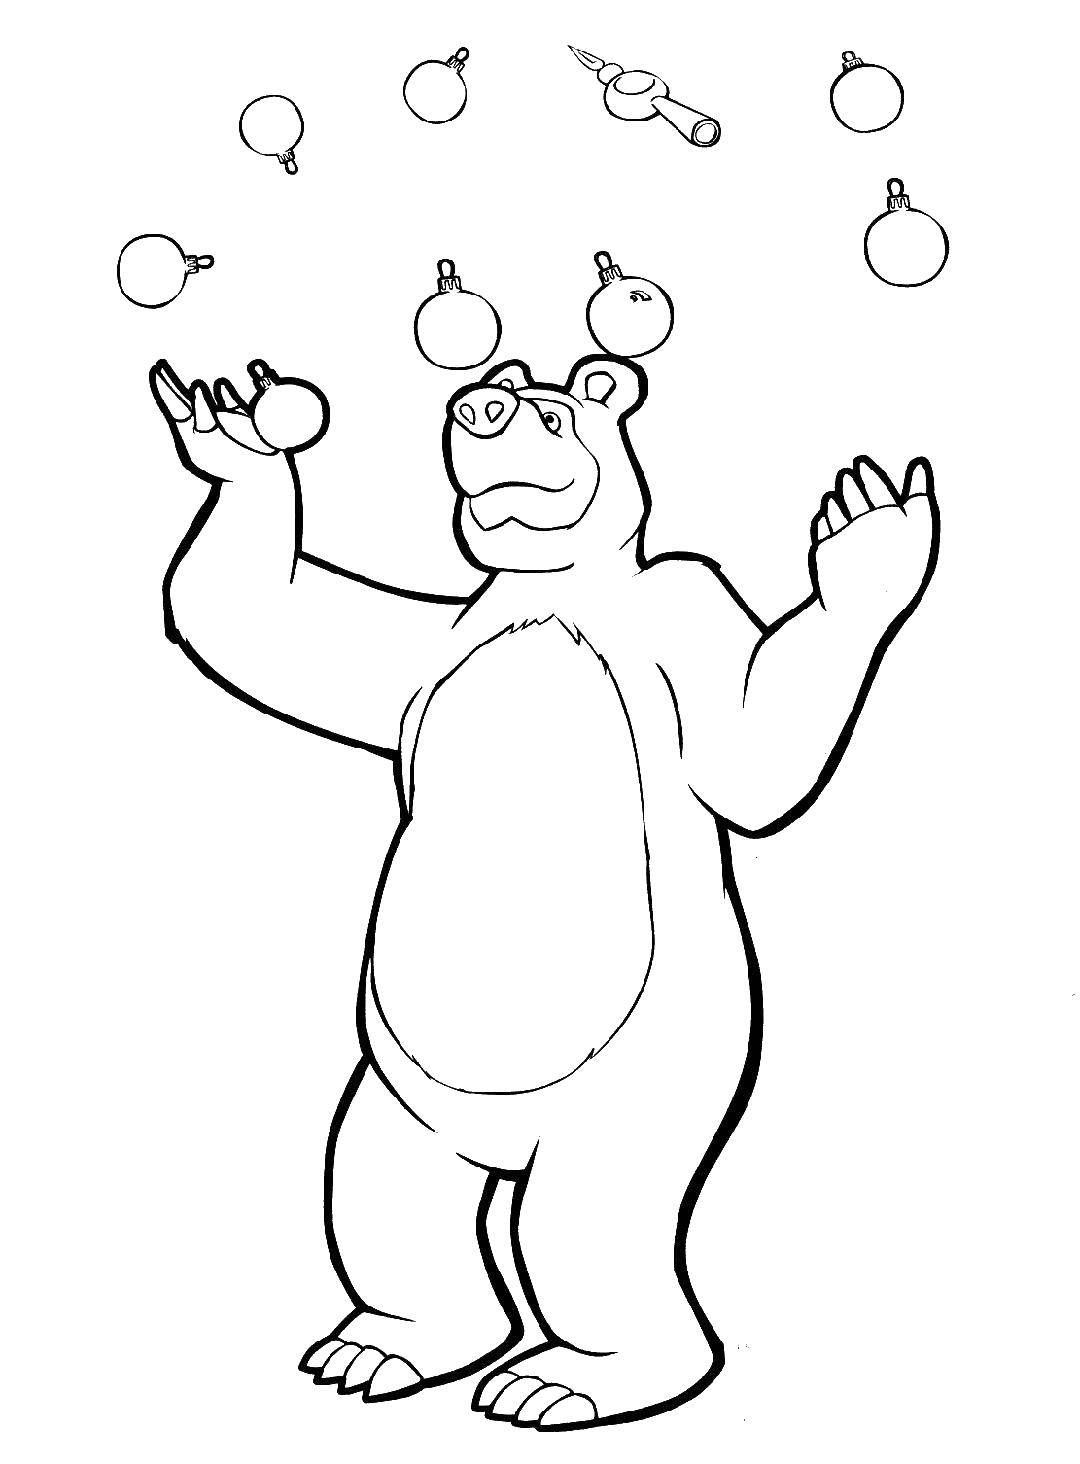 Раскраски для детей про озорную Машу из мультфильма Маша и медведь  Медведь жонглирует